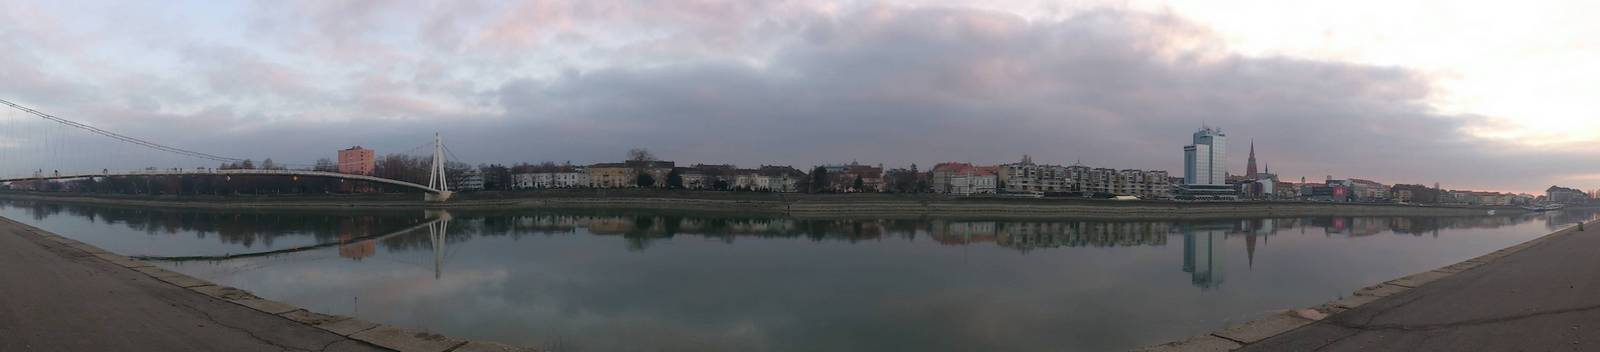 Panorama grada

Foto: Ivan Benc

Kljune rijei: osijek drava